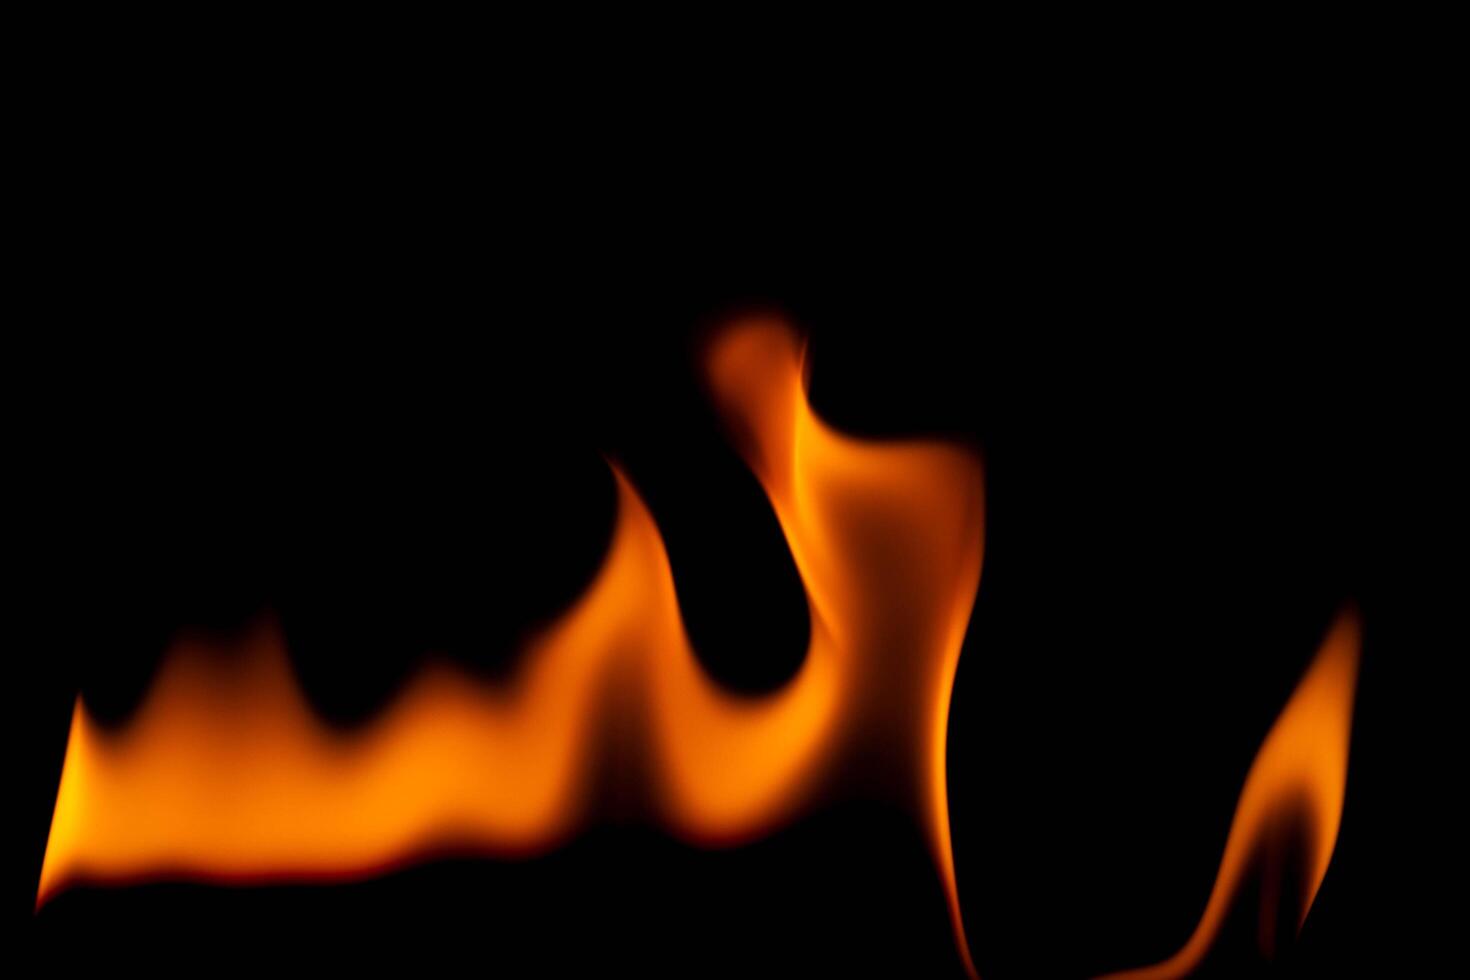 heet vlammen Aan een zwart achtergrond. mooi vlam van brand in de donker. abstract van brandend vlammen en rook. foto